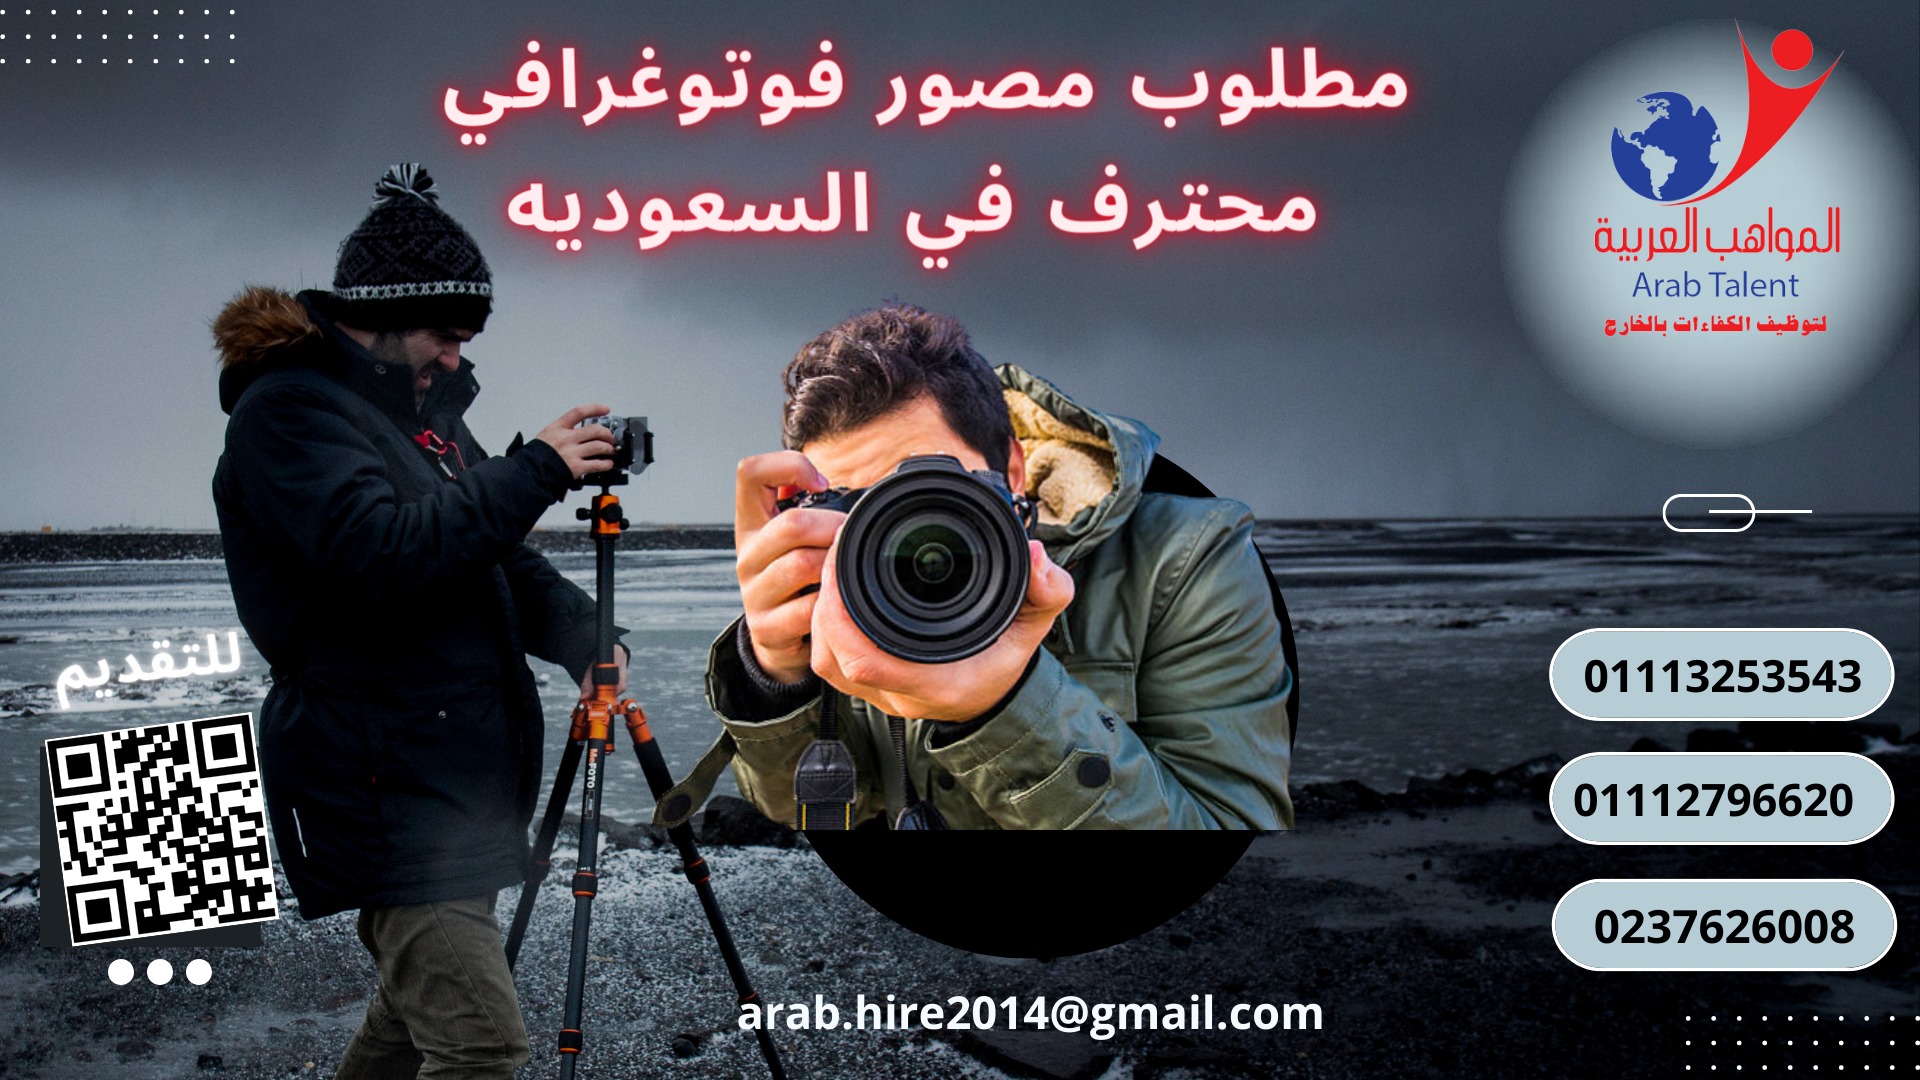 للعمل باستوديو في السعودية مصورين فوتوغرافي محترف علي أن تتوافر به الشروط الآتية مؤهل عالي الاحترافي